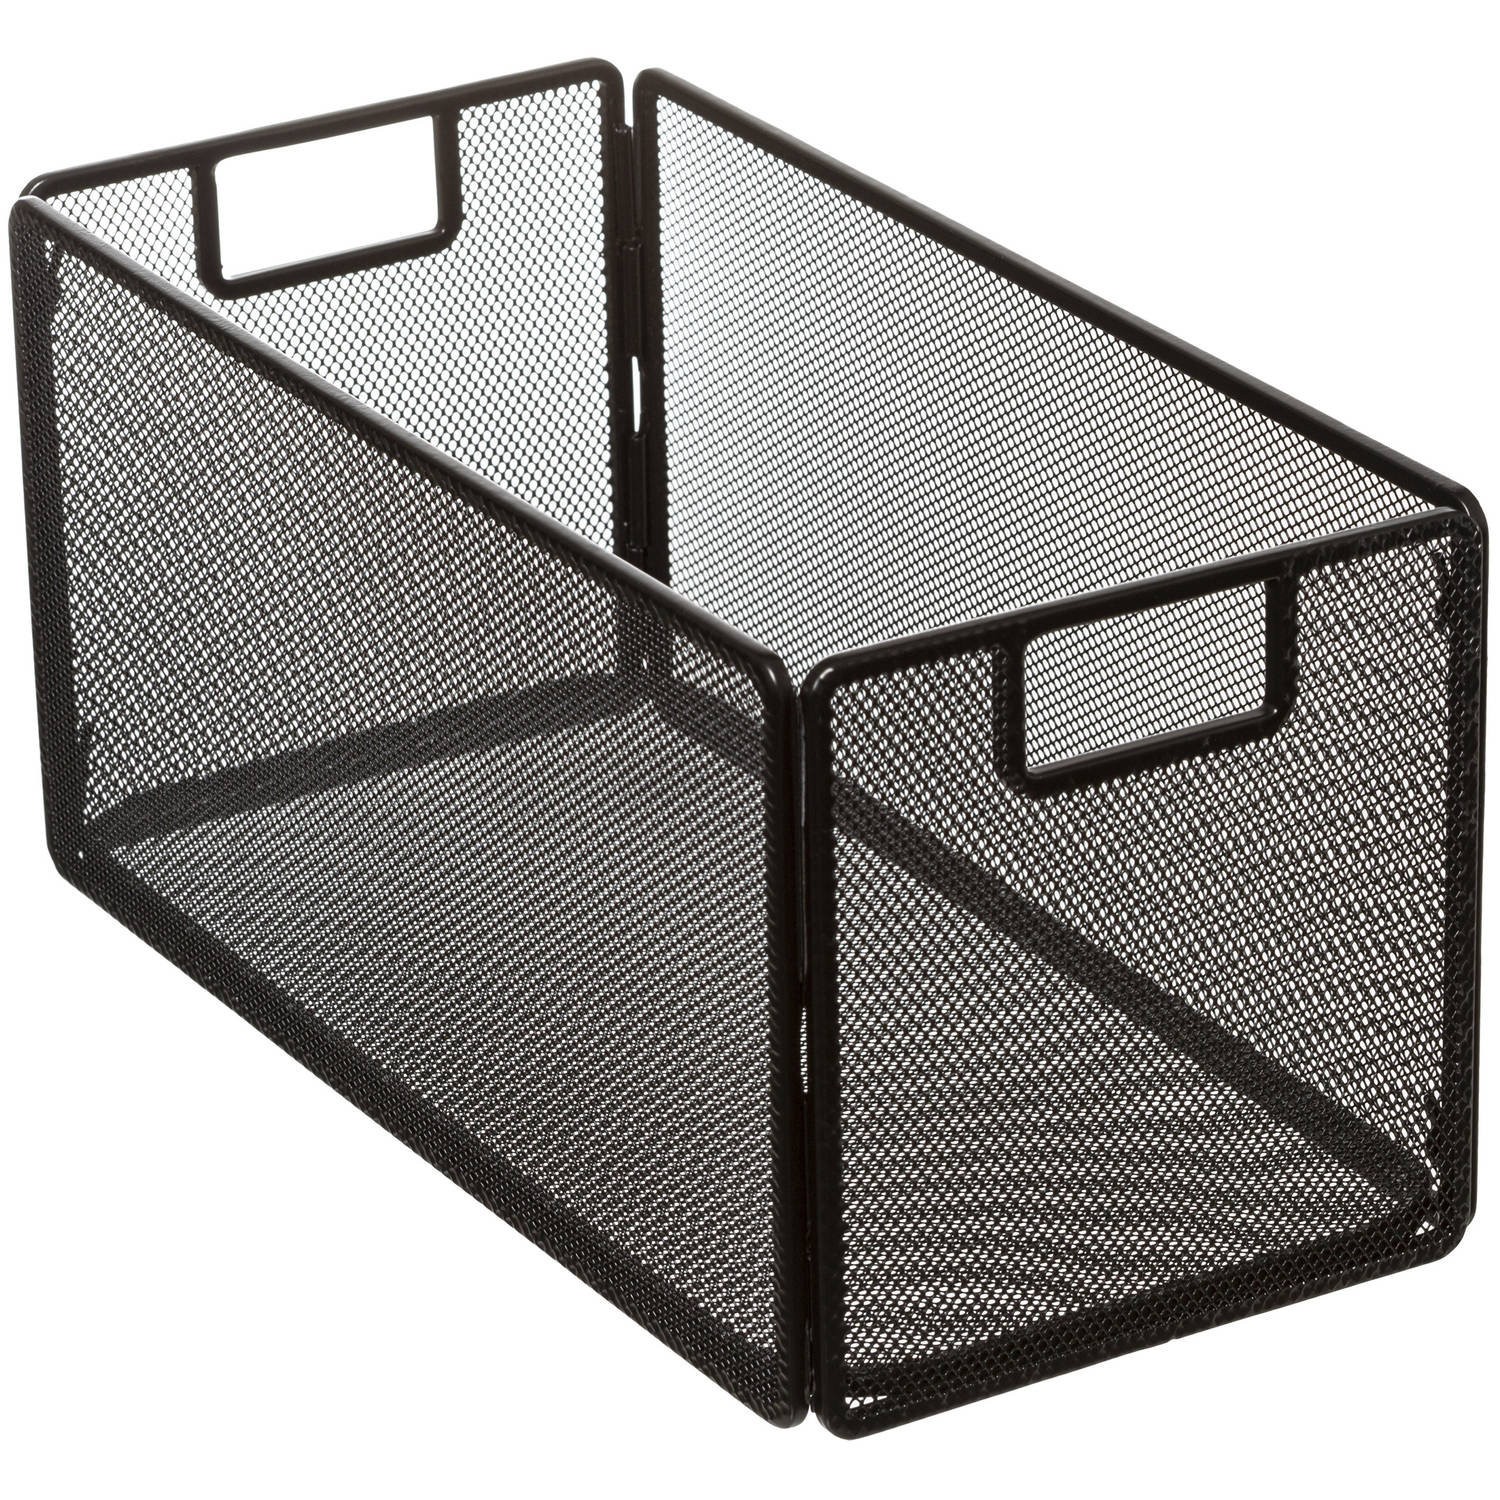 Opbergmand/kastmand 7 liter zwart van metaal/mesh 31 x 15 x 15 cm - Opbergboxen - Vakkenkast manden